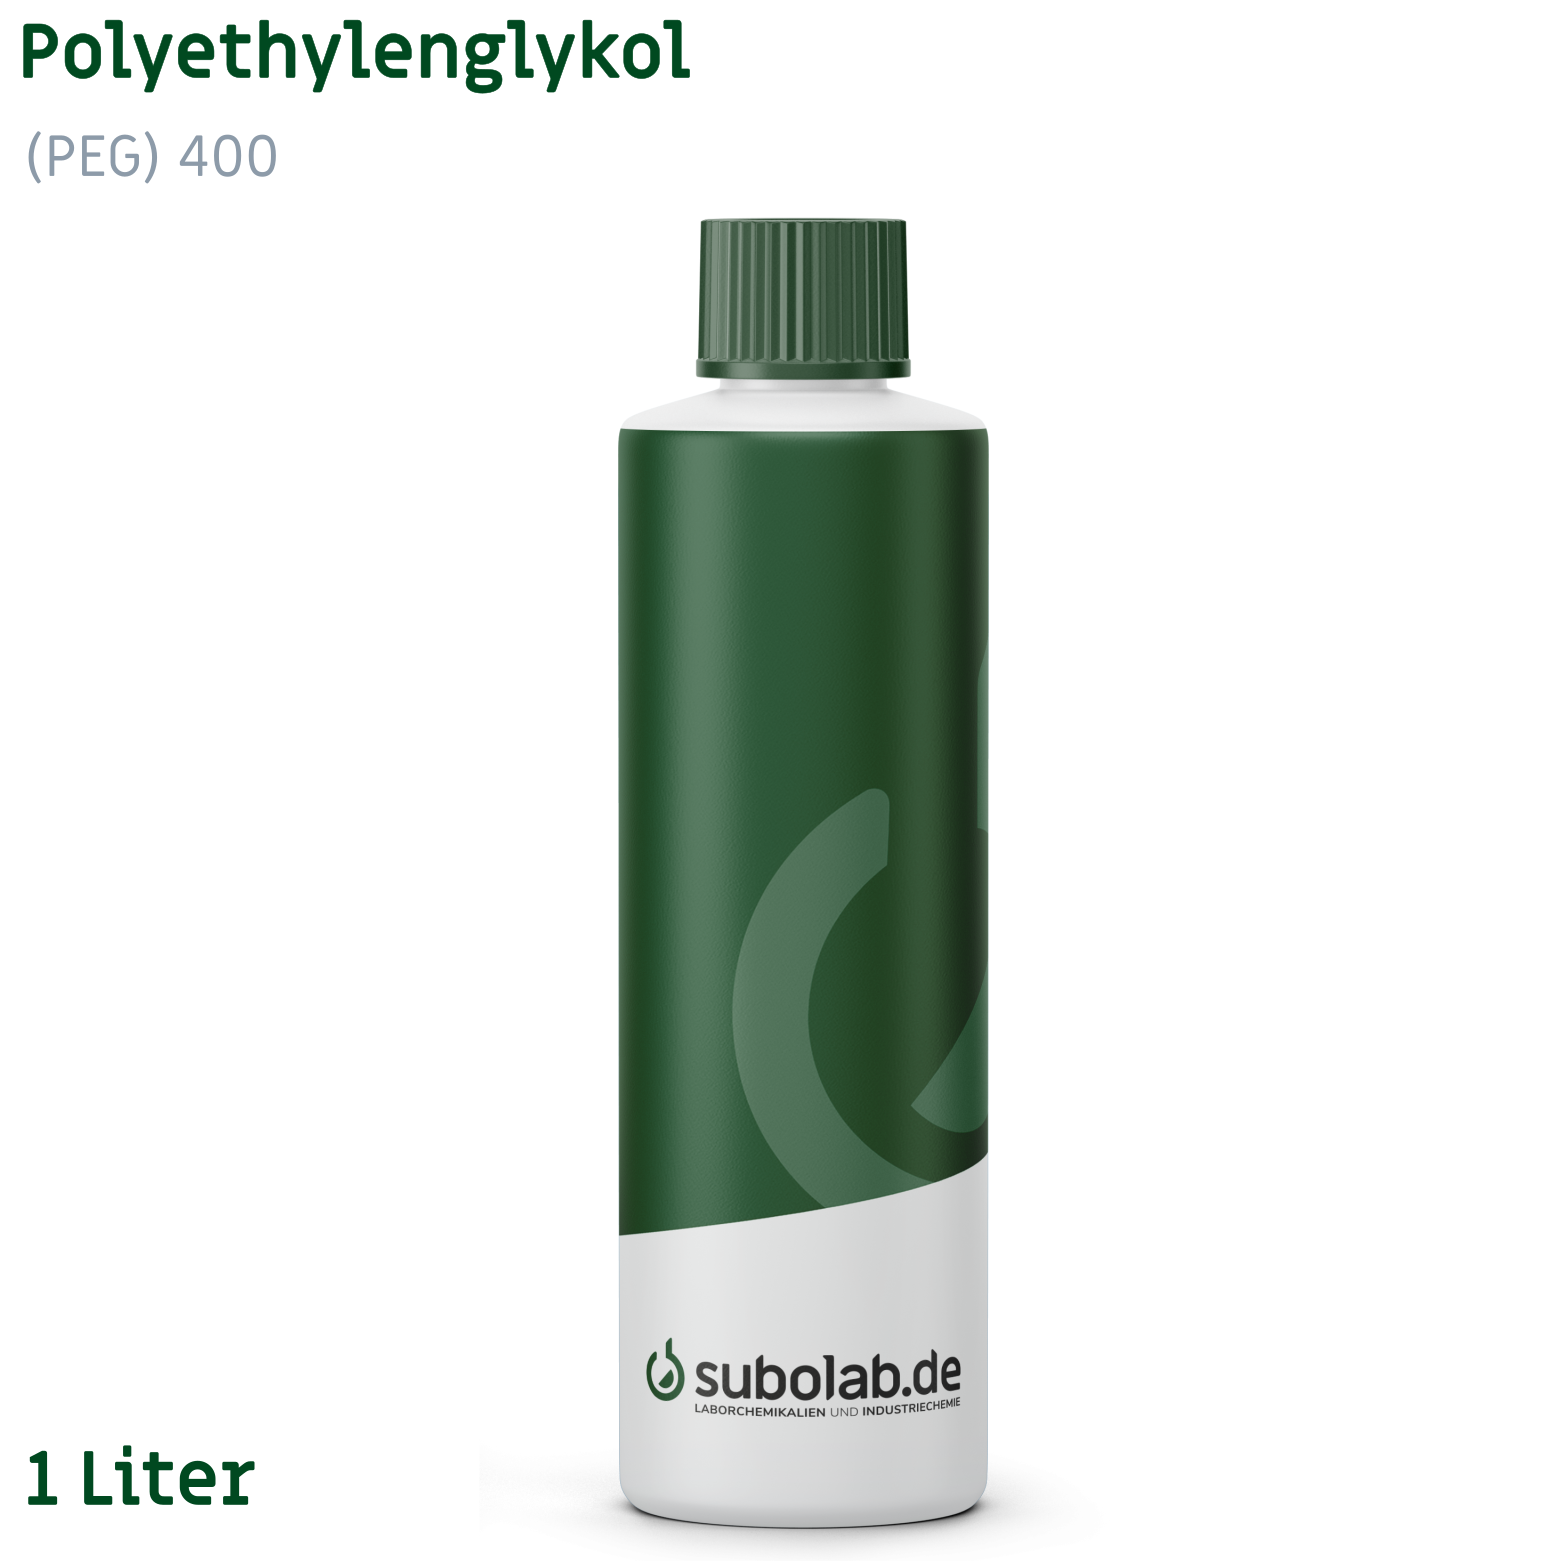 Bild von Polyethylenglykol (PEG) 400 (1 Liter)